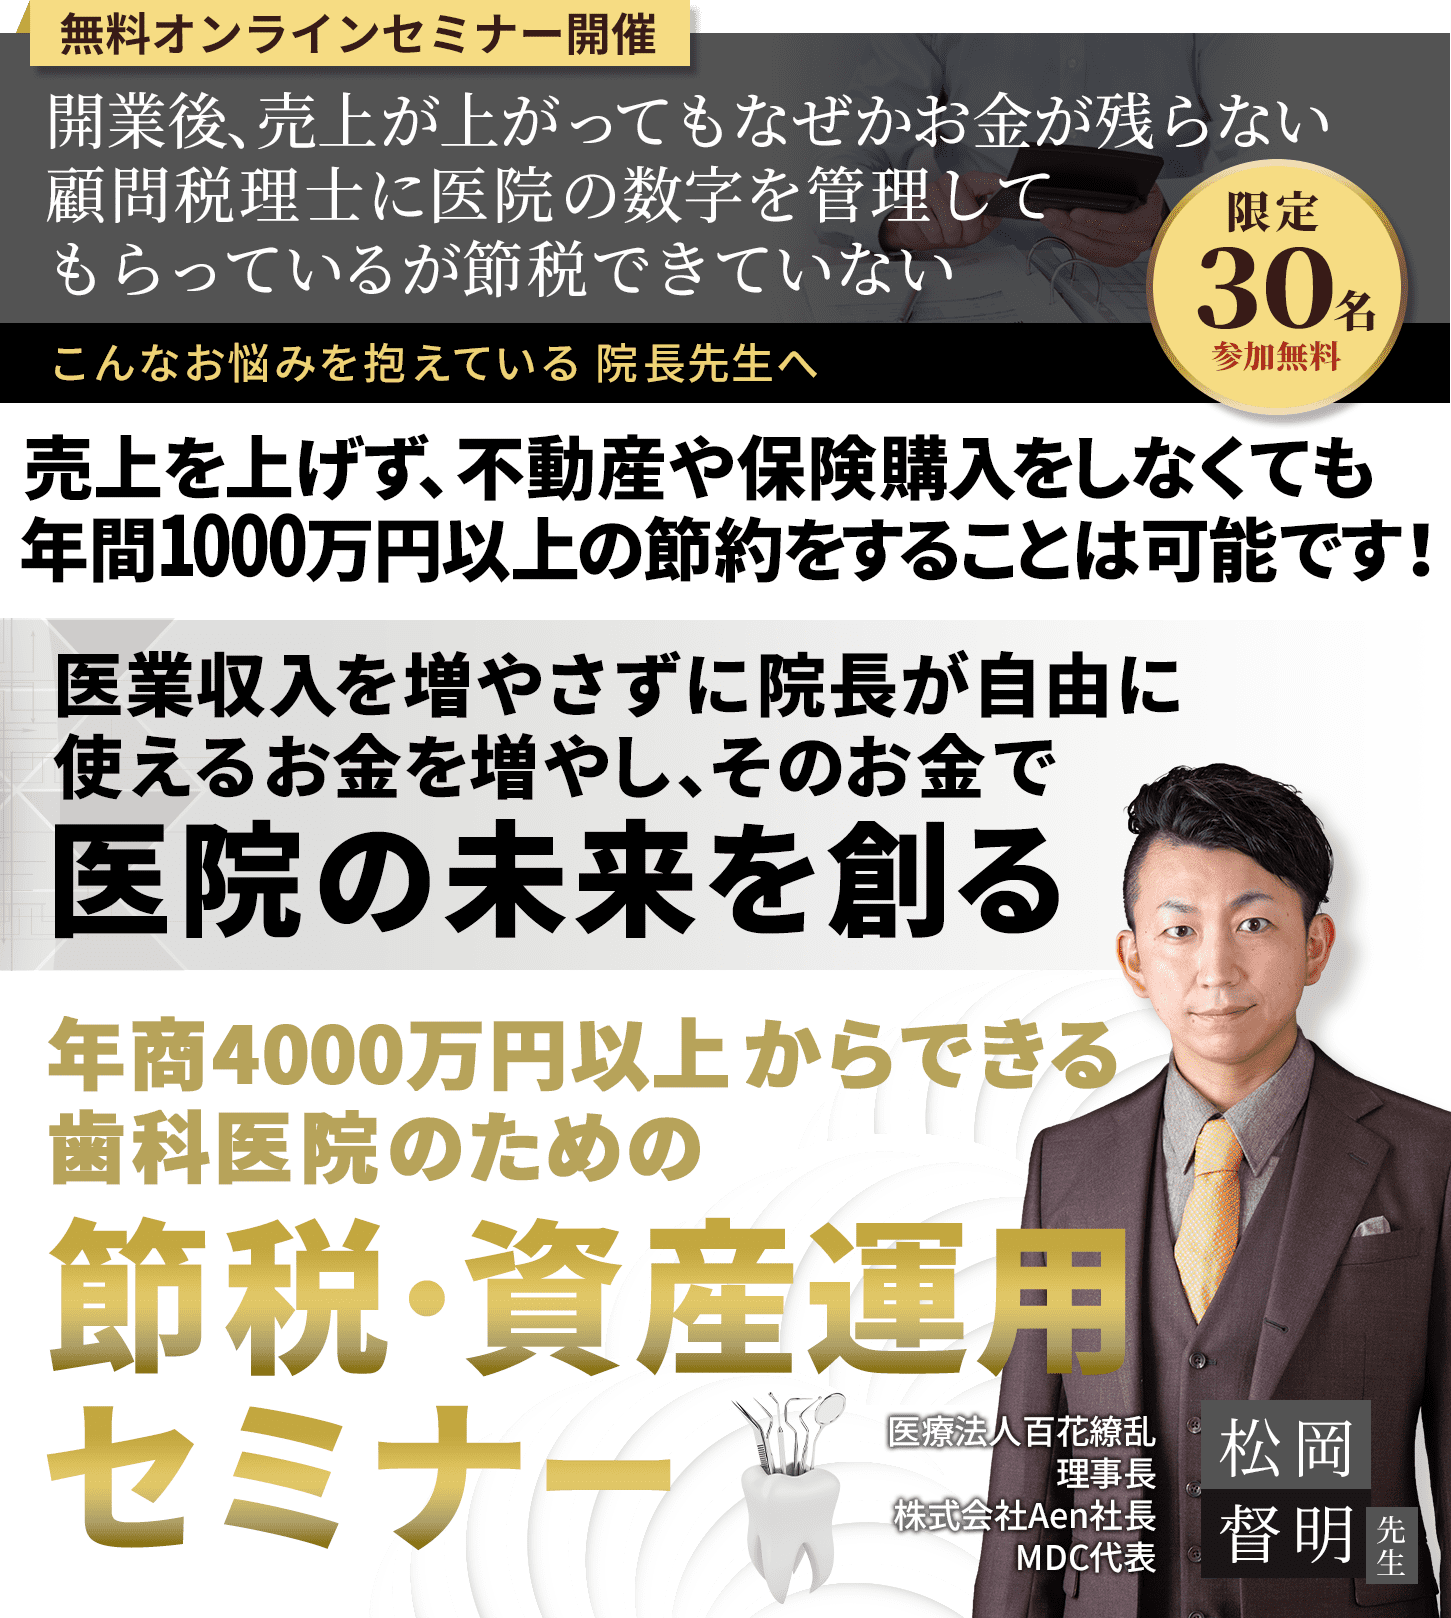 なぜ、名古屋歯科医院は人口わずか3万人の田舎町で週4日しか診療しなくても